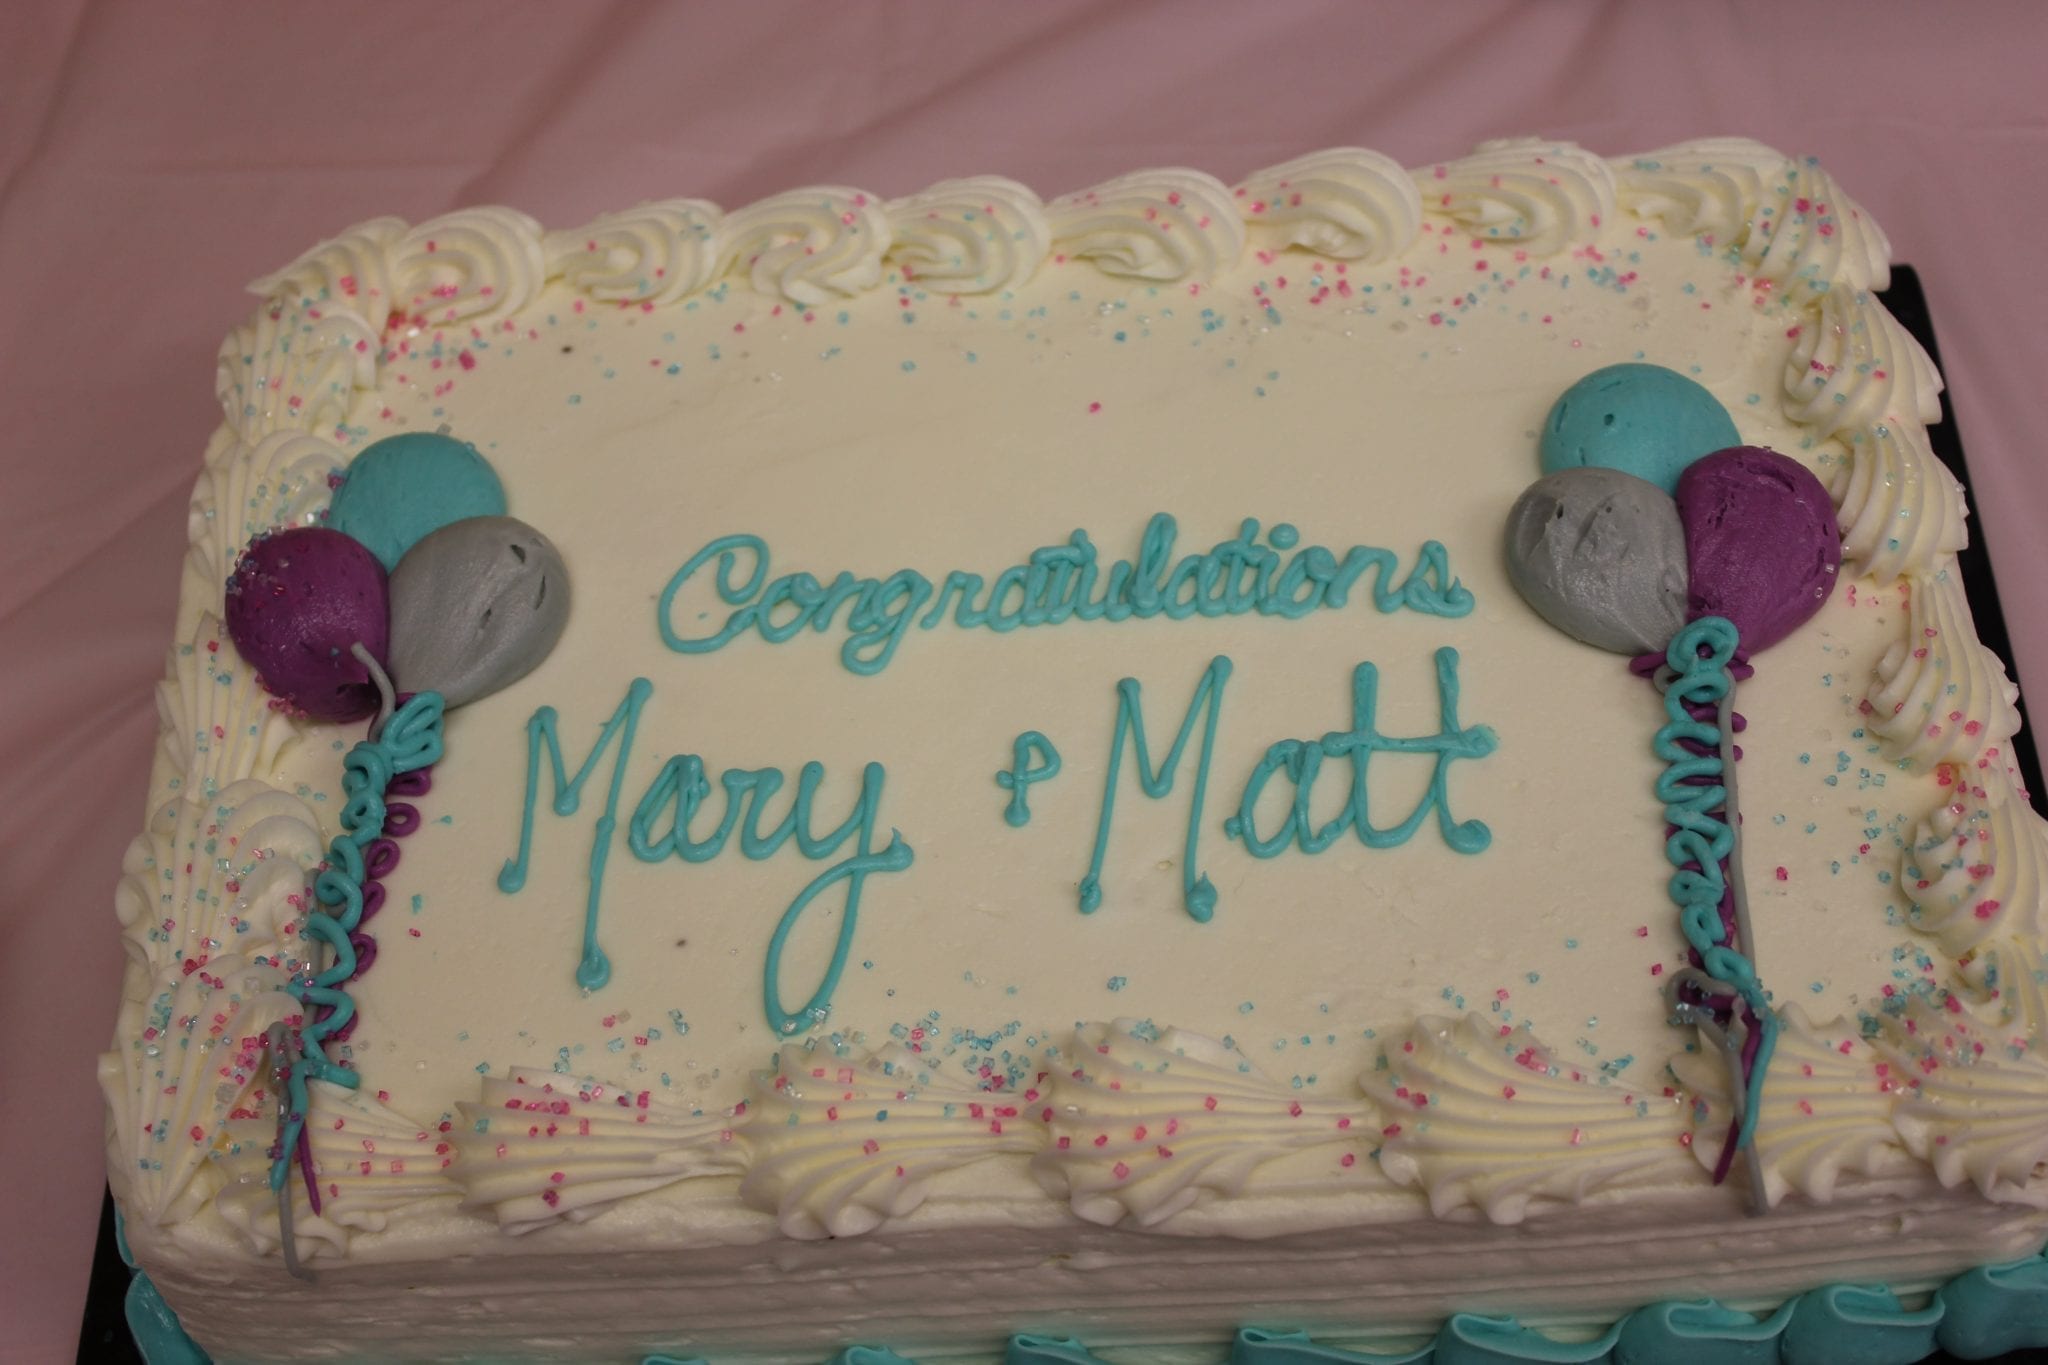 Congratulations Mary & Matt